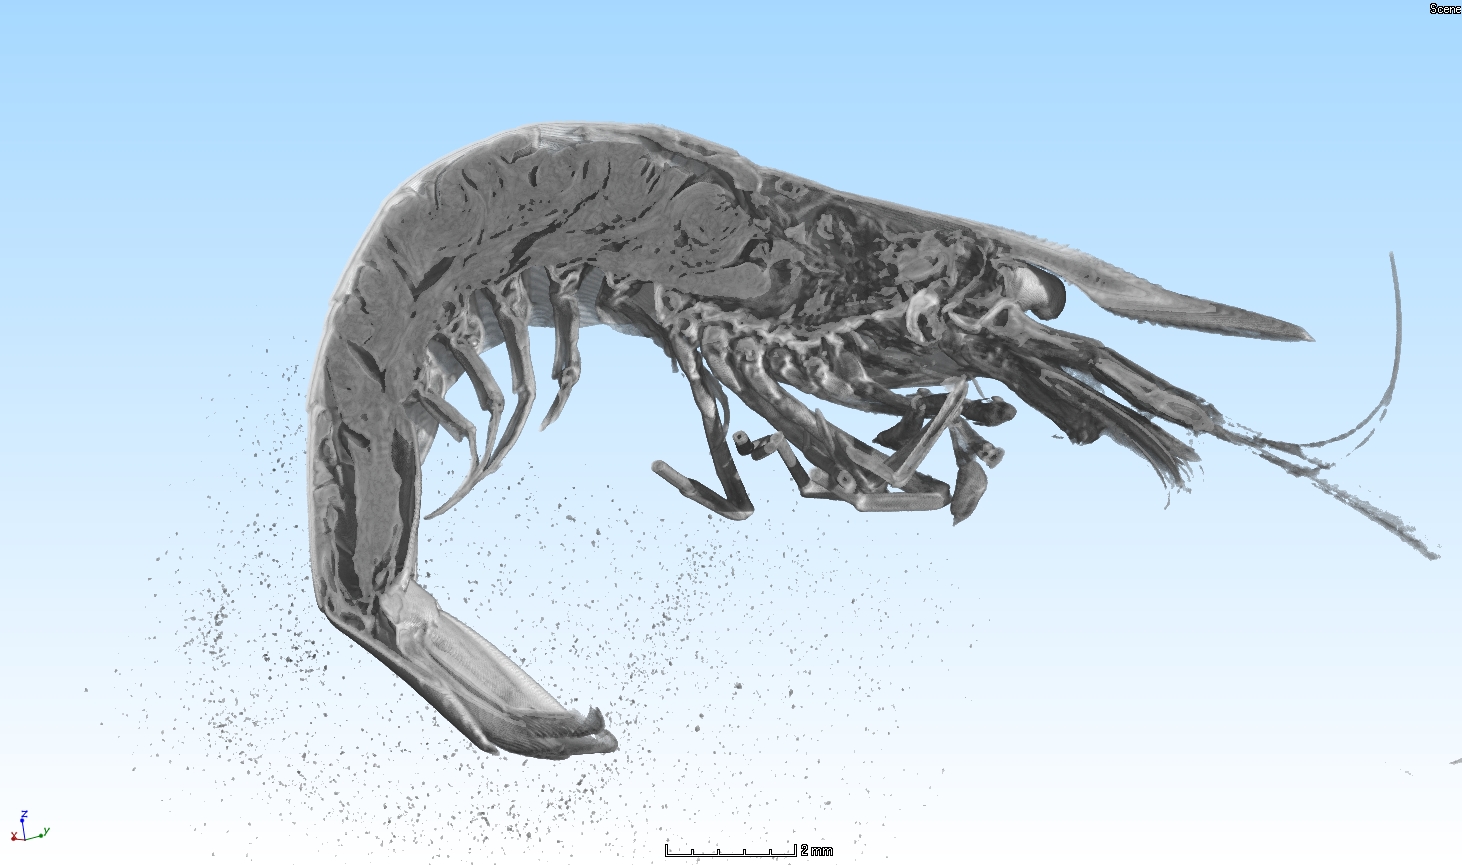 Anatomy of a shrimp